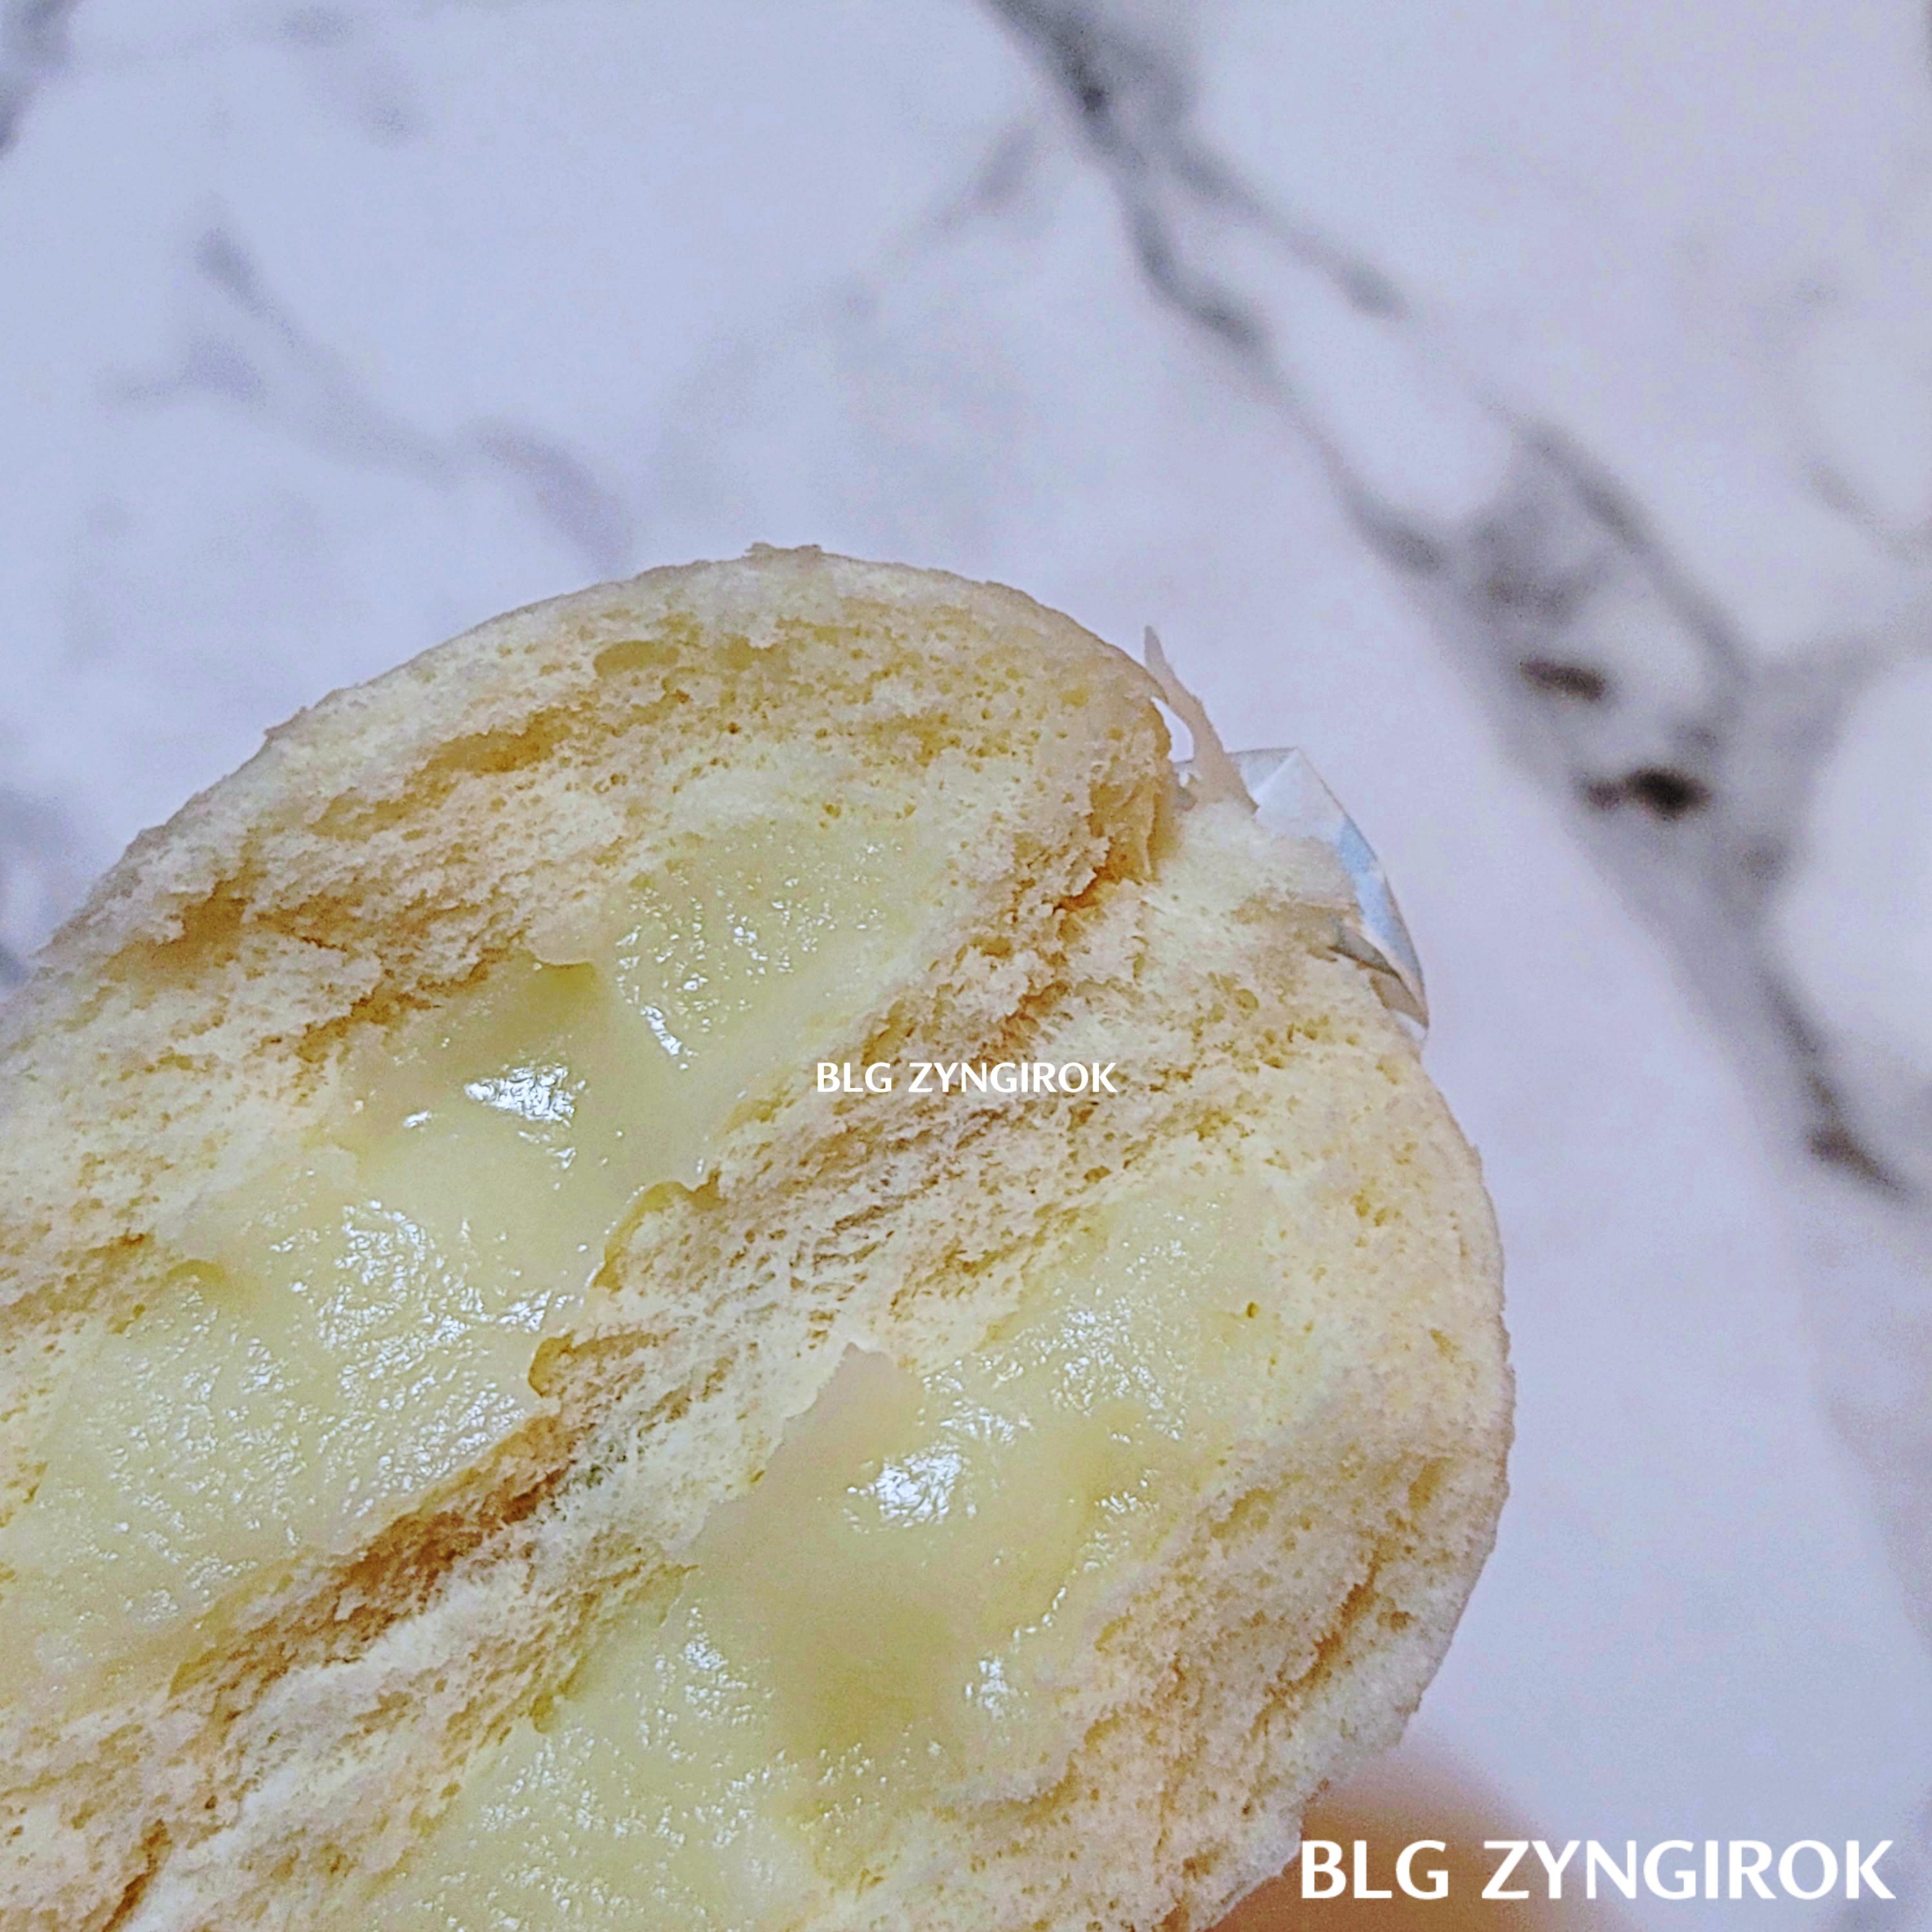 토게피의 순백우유 호빵을 반 가른 모습이다. 흰 호빵 안에 흰 우유 크림이 들어있다.